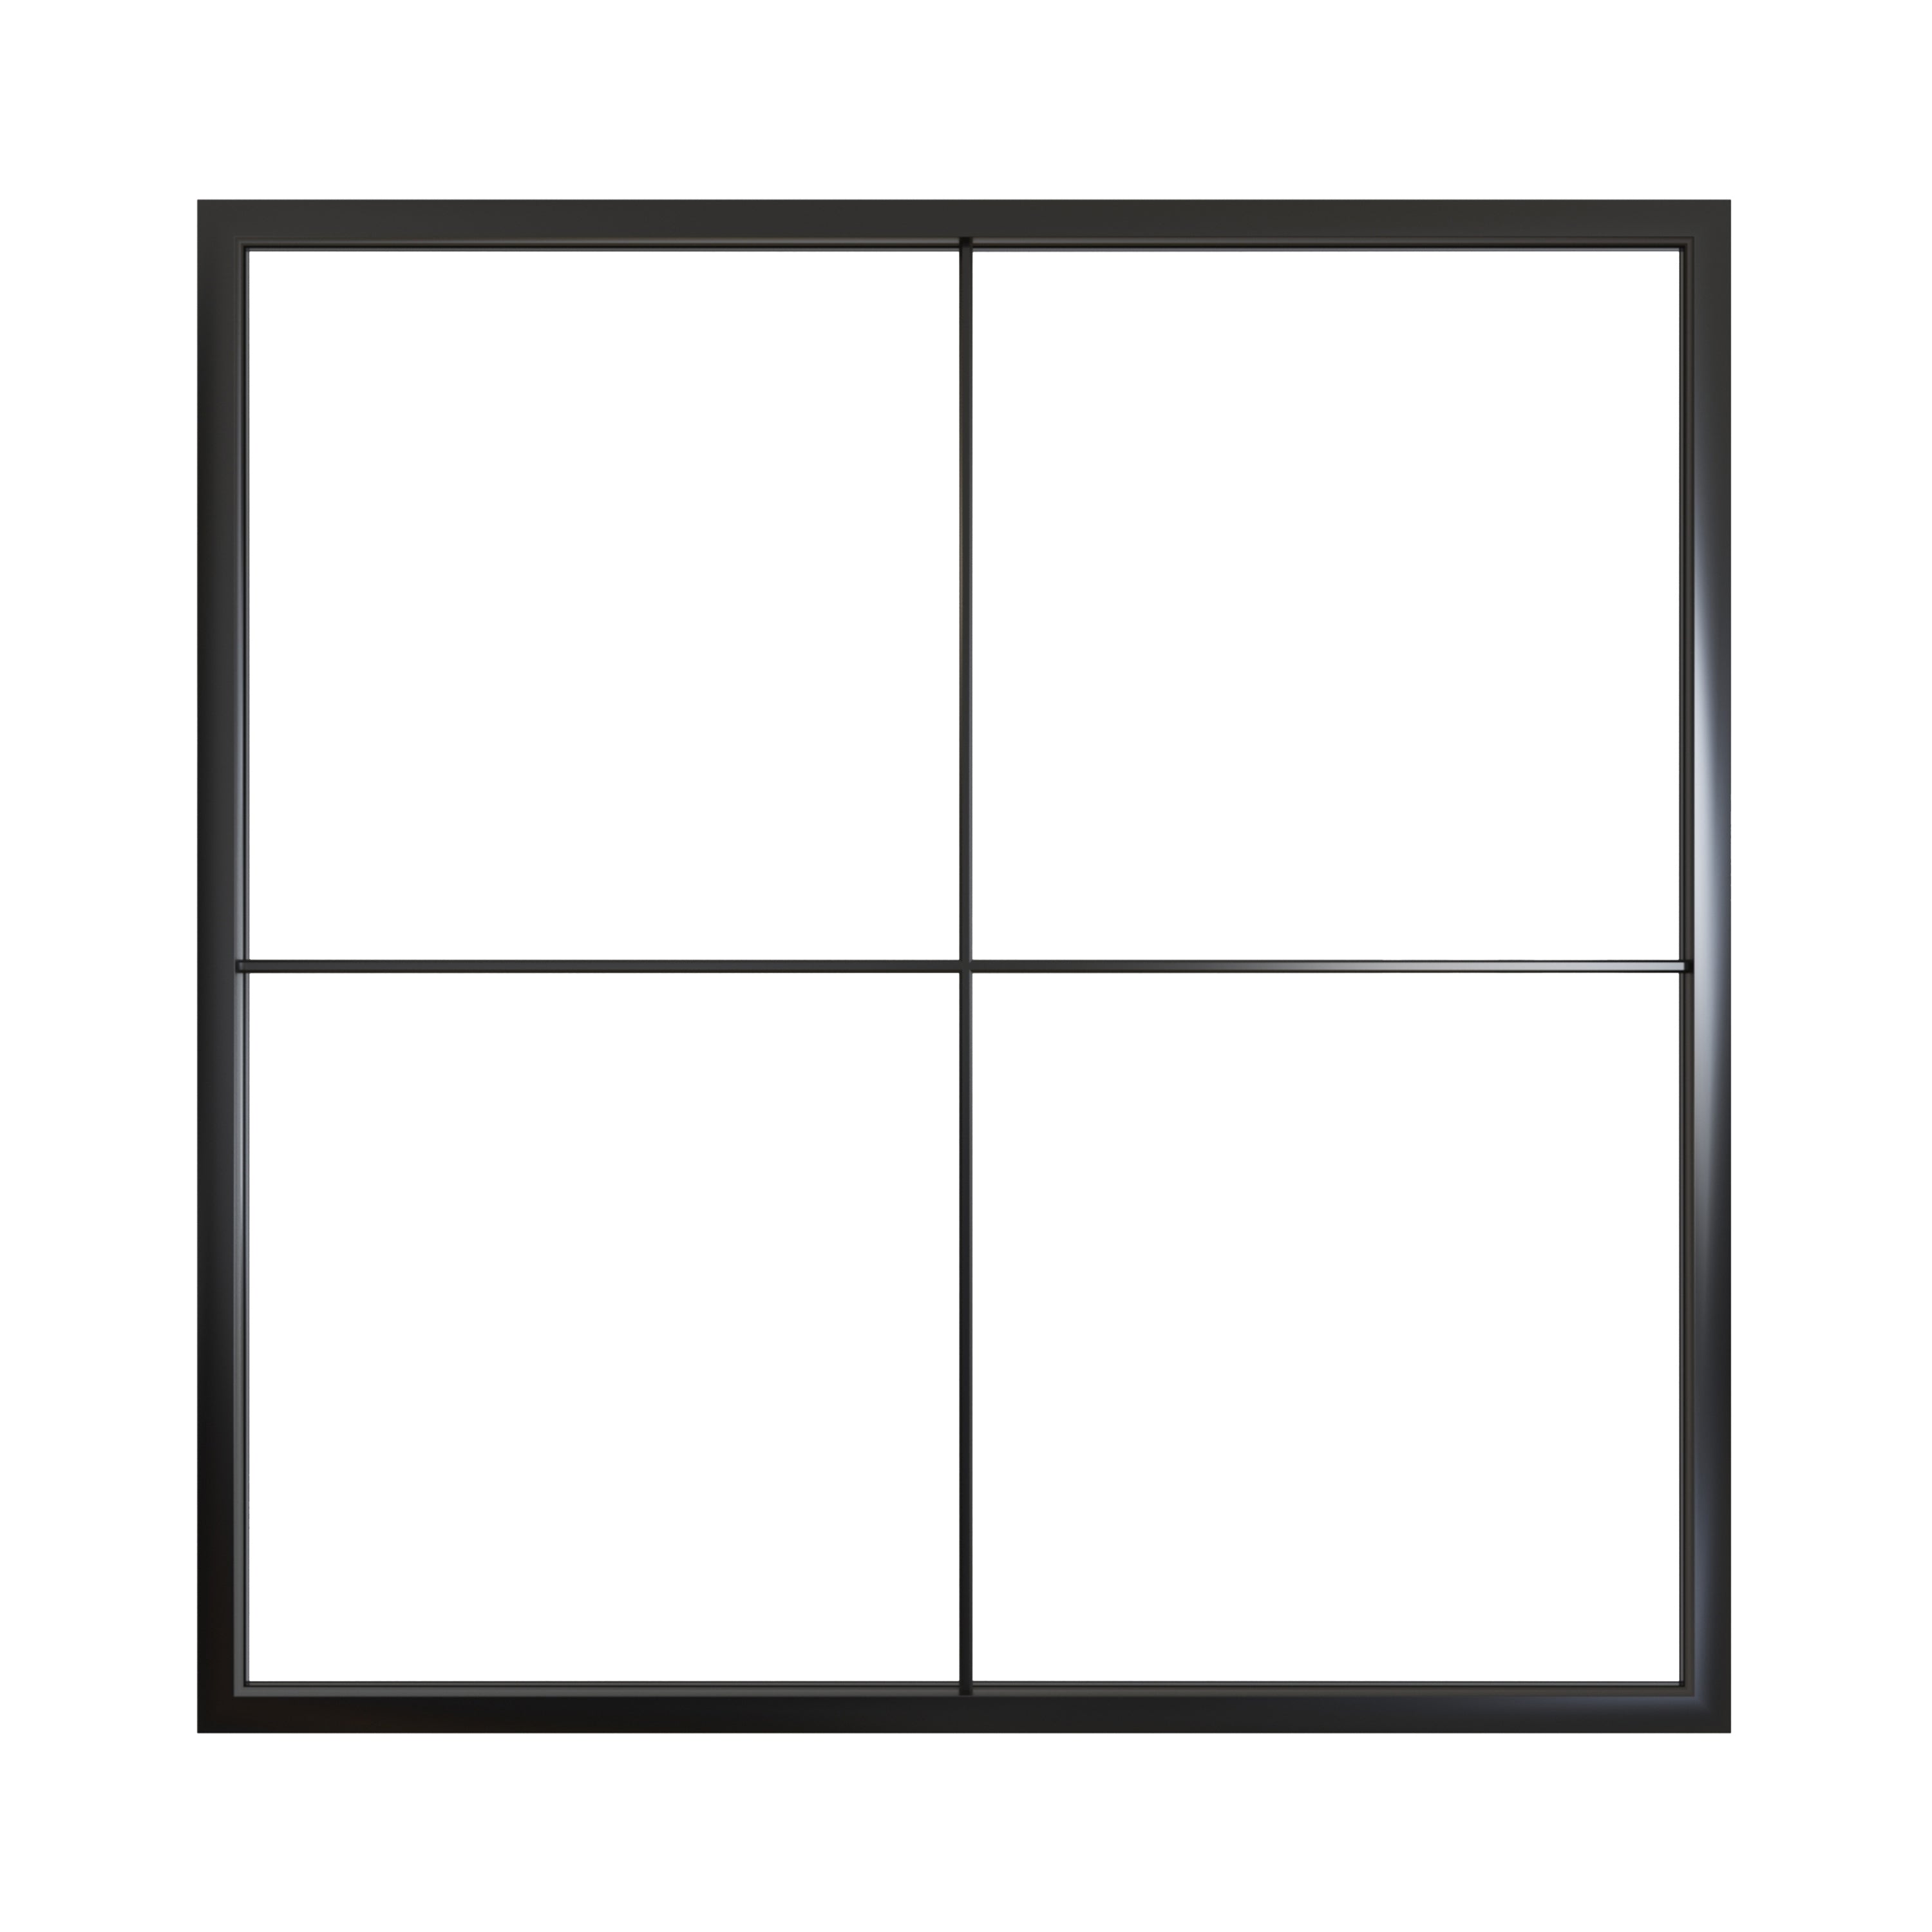 Fixed Square Metal Picture Window - Aluminum